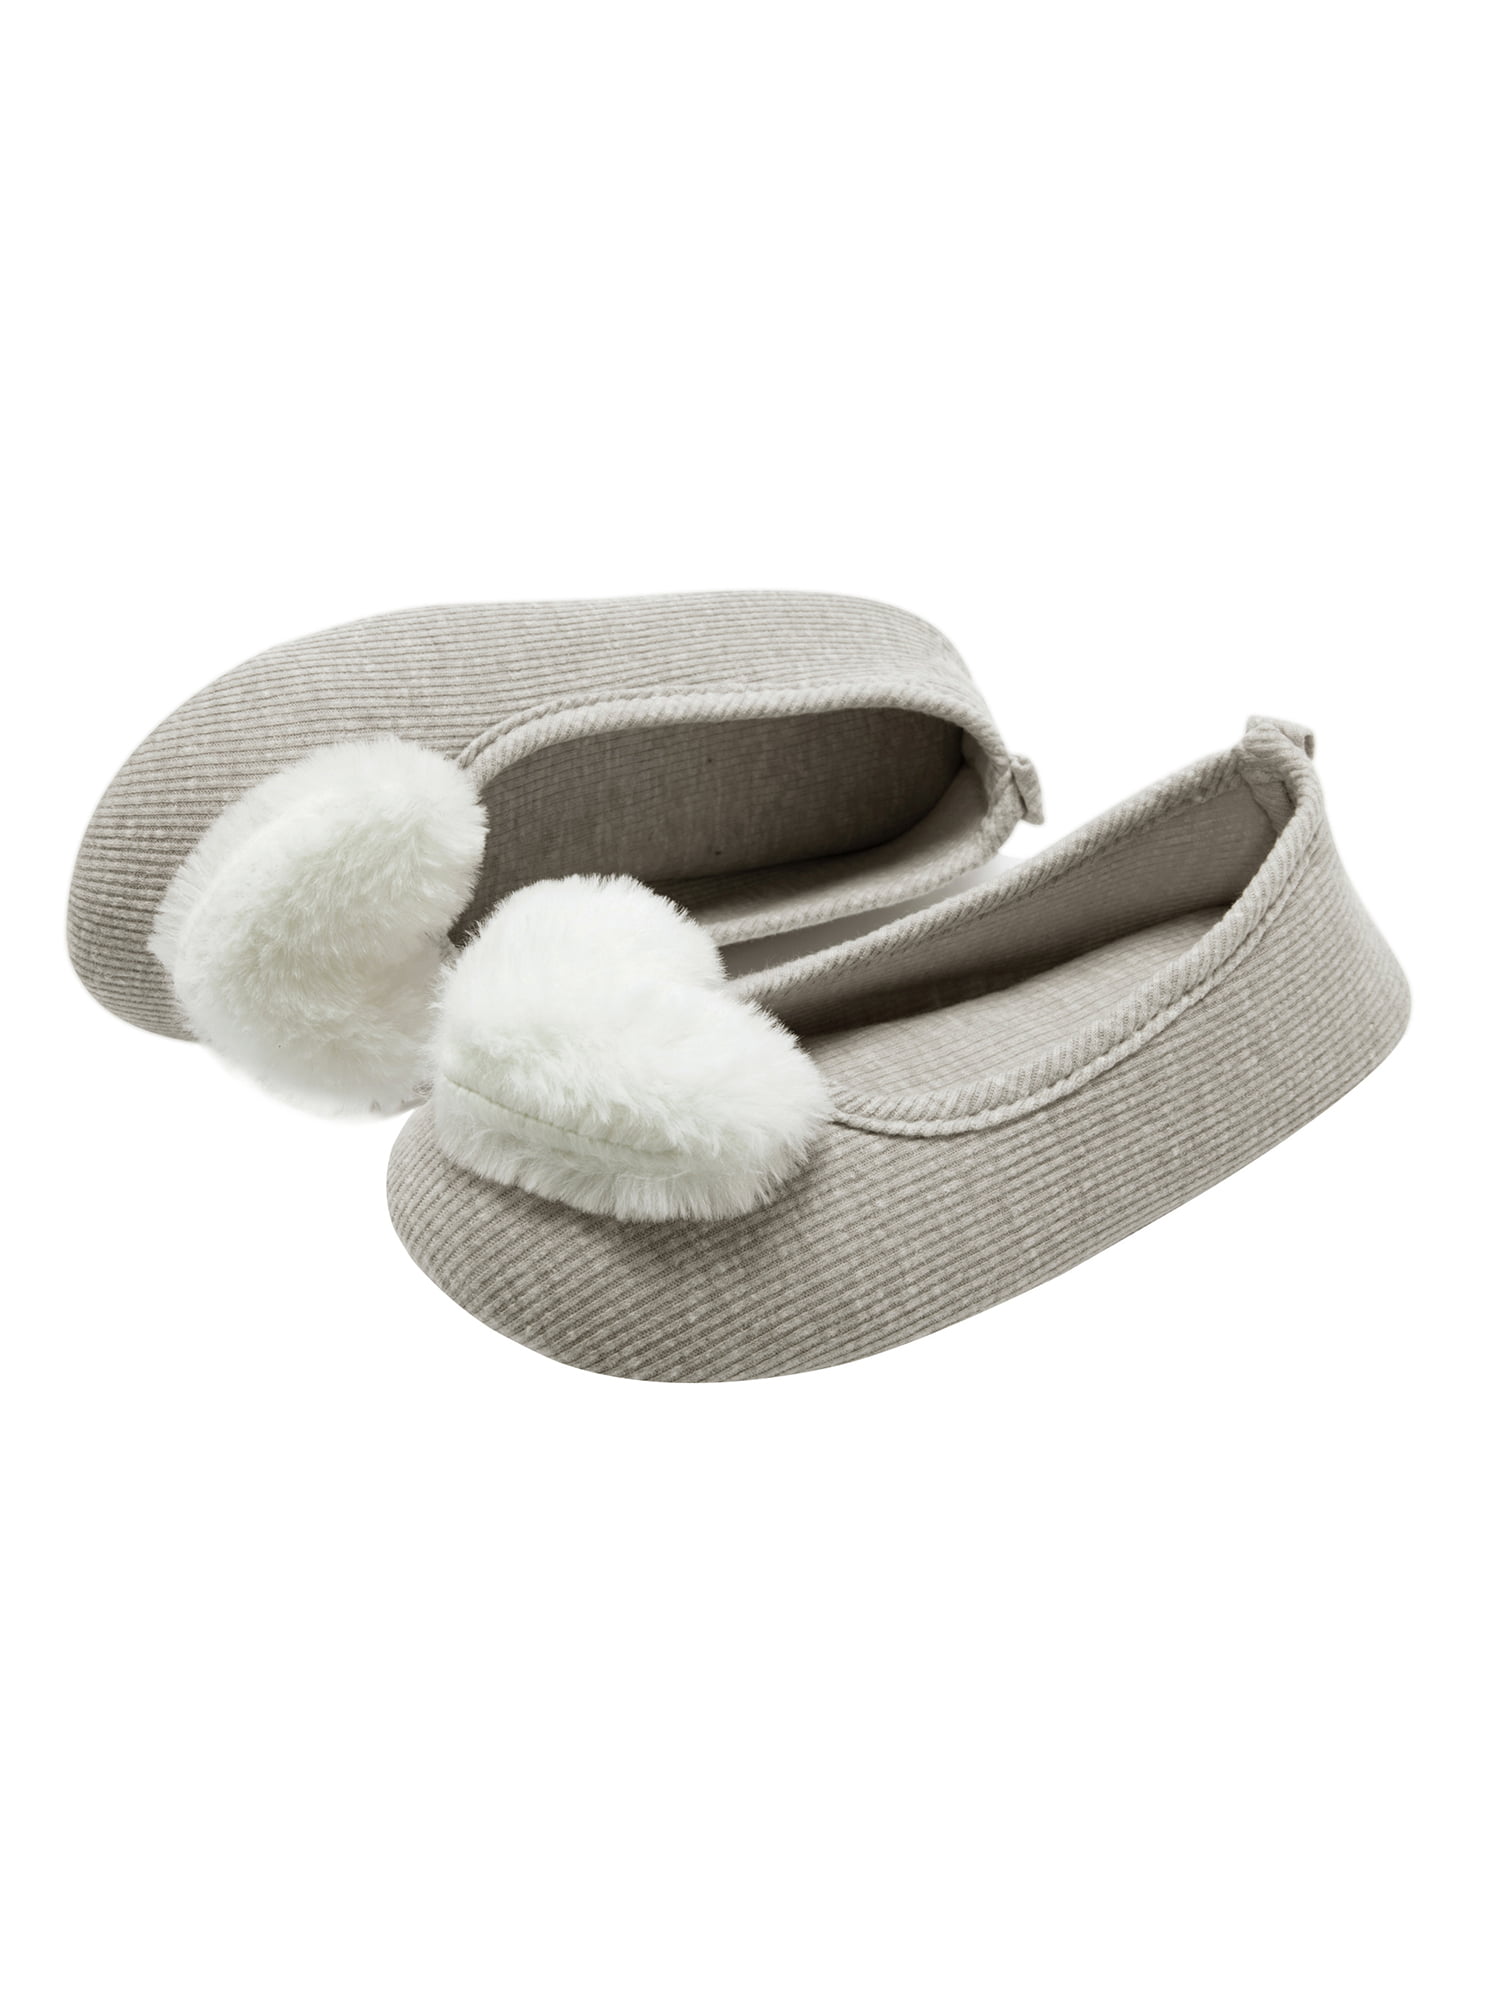 Womens Slippers Cute Memory Foam Slippers for Women Winter Warm House ...